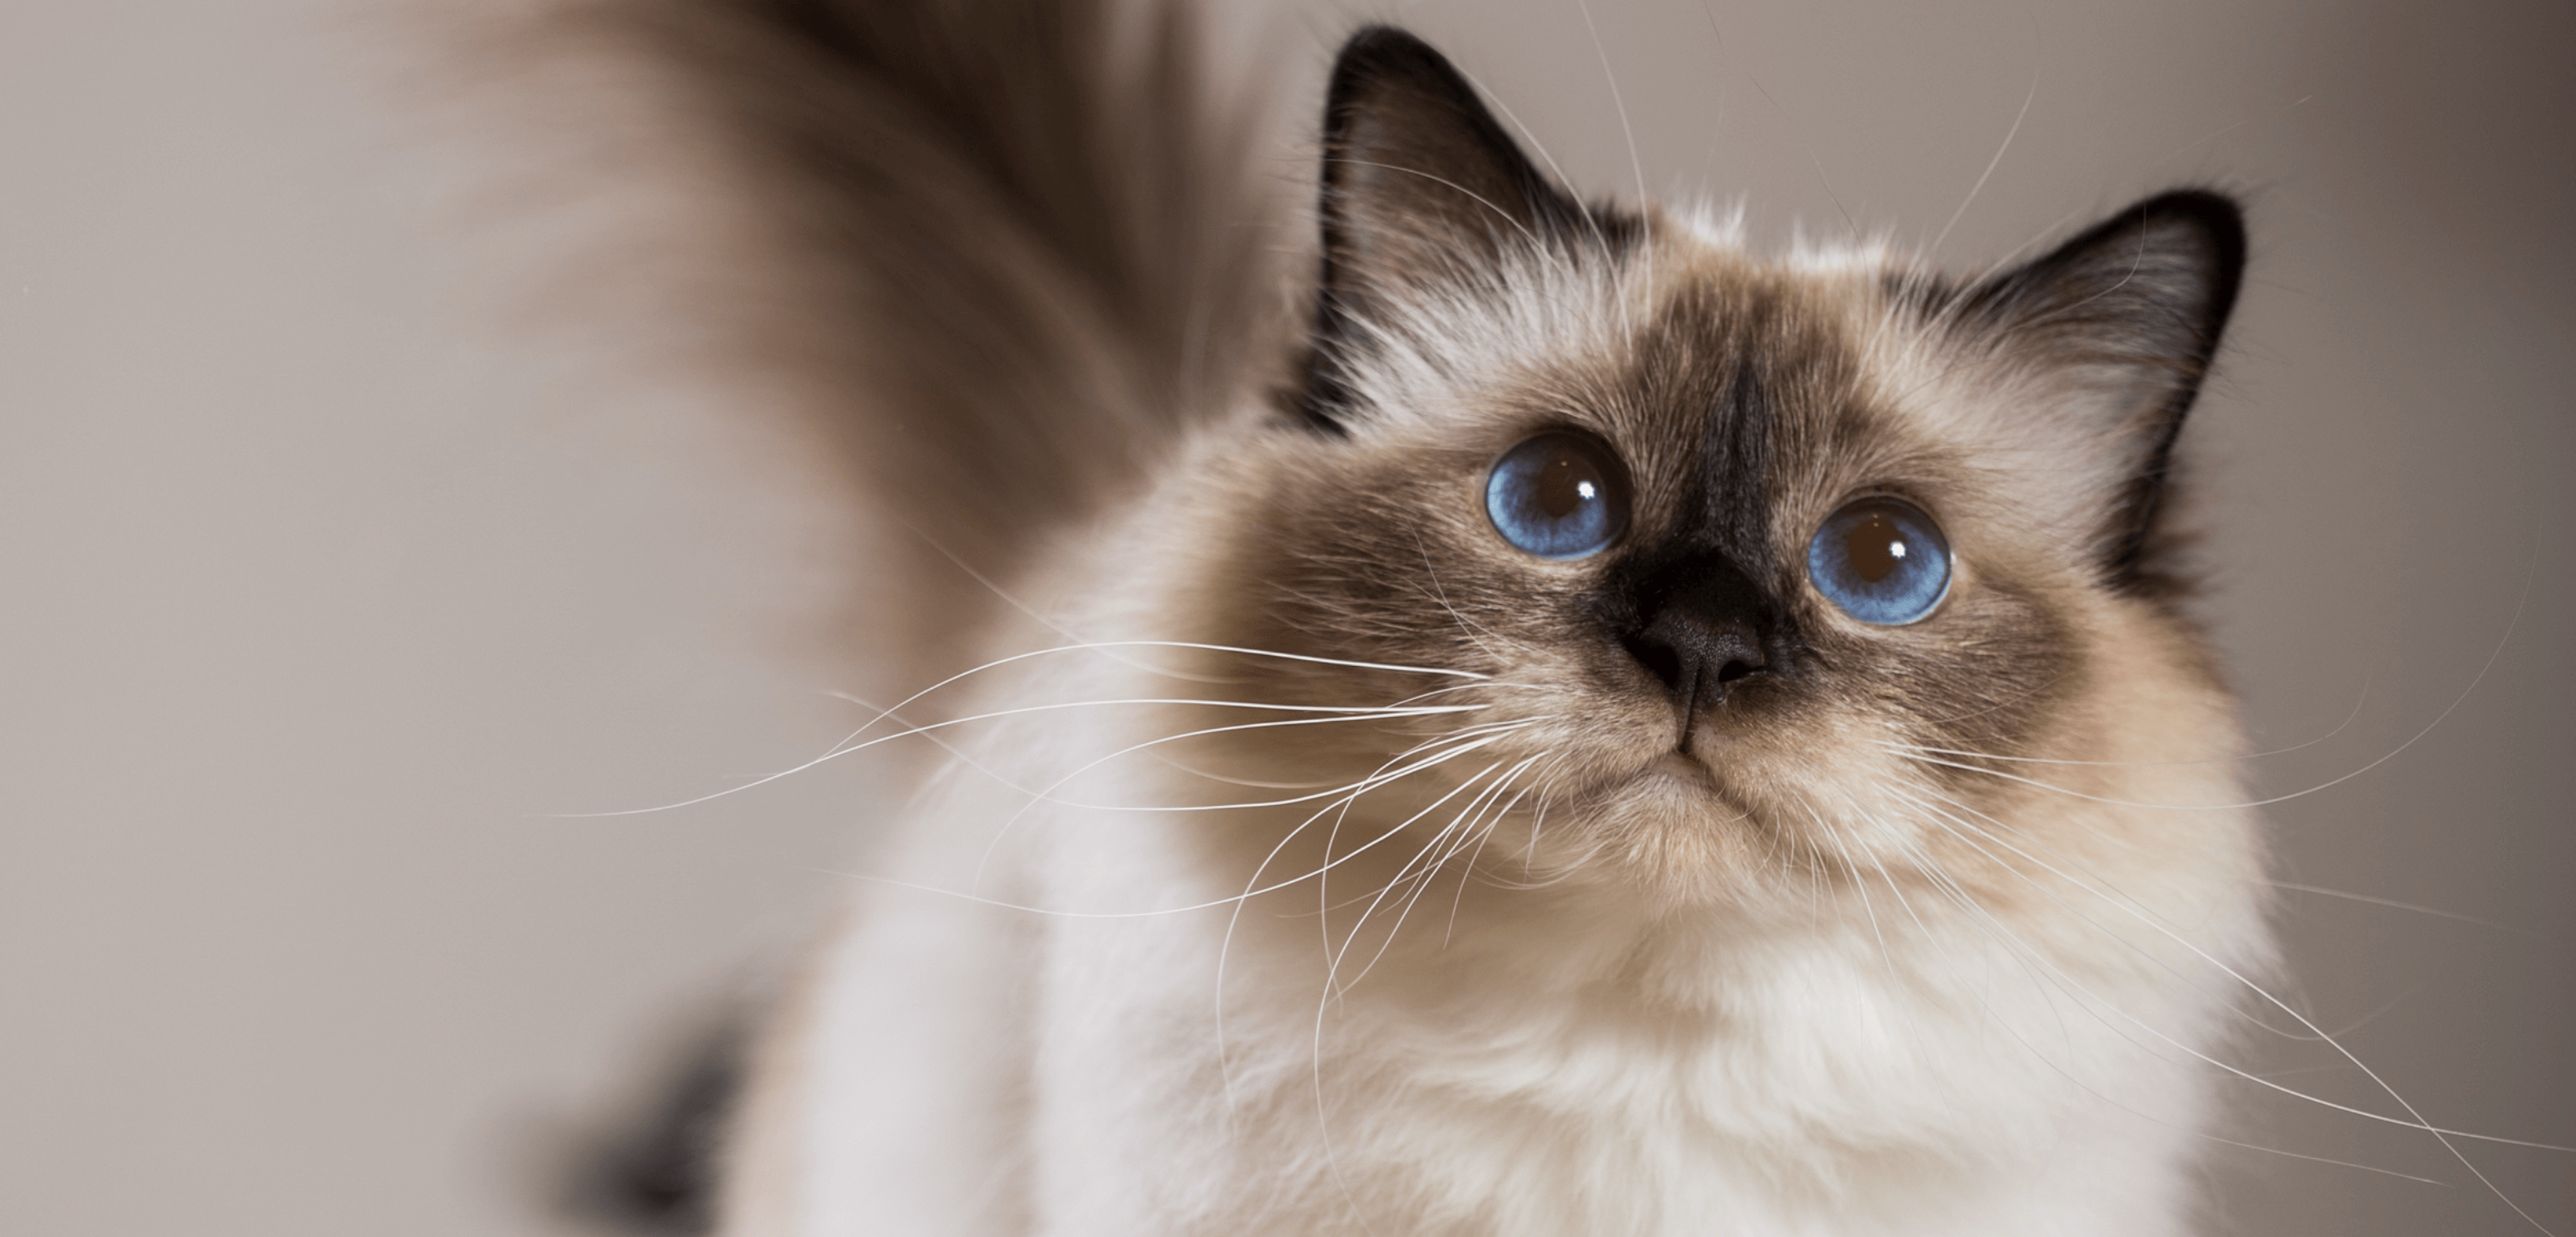 使用了Hi-Imprex画质引擎技术拍摄的猫咪照片